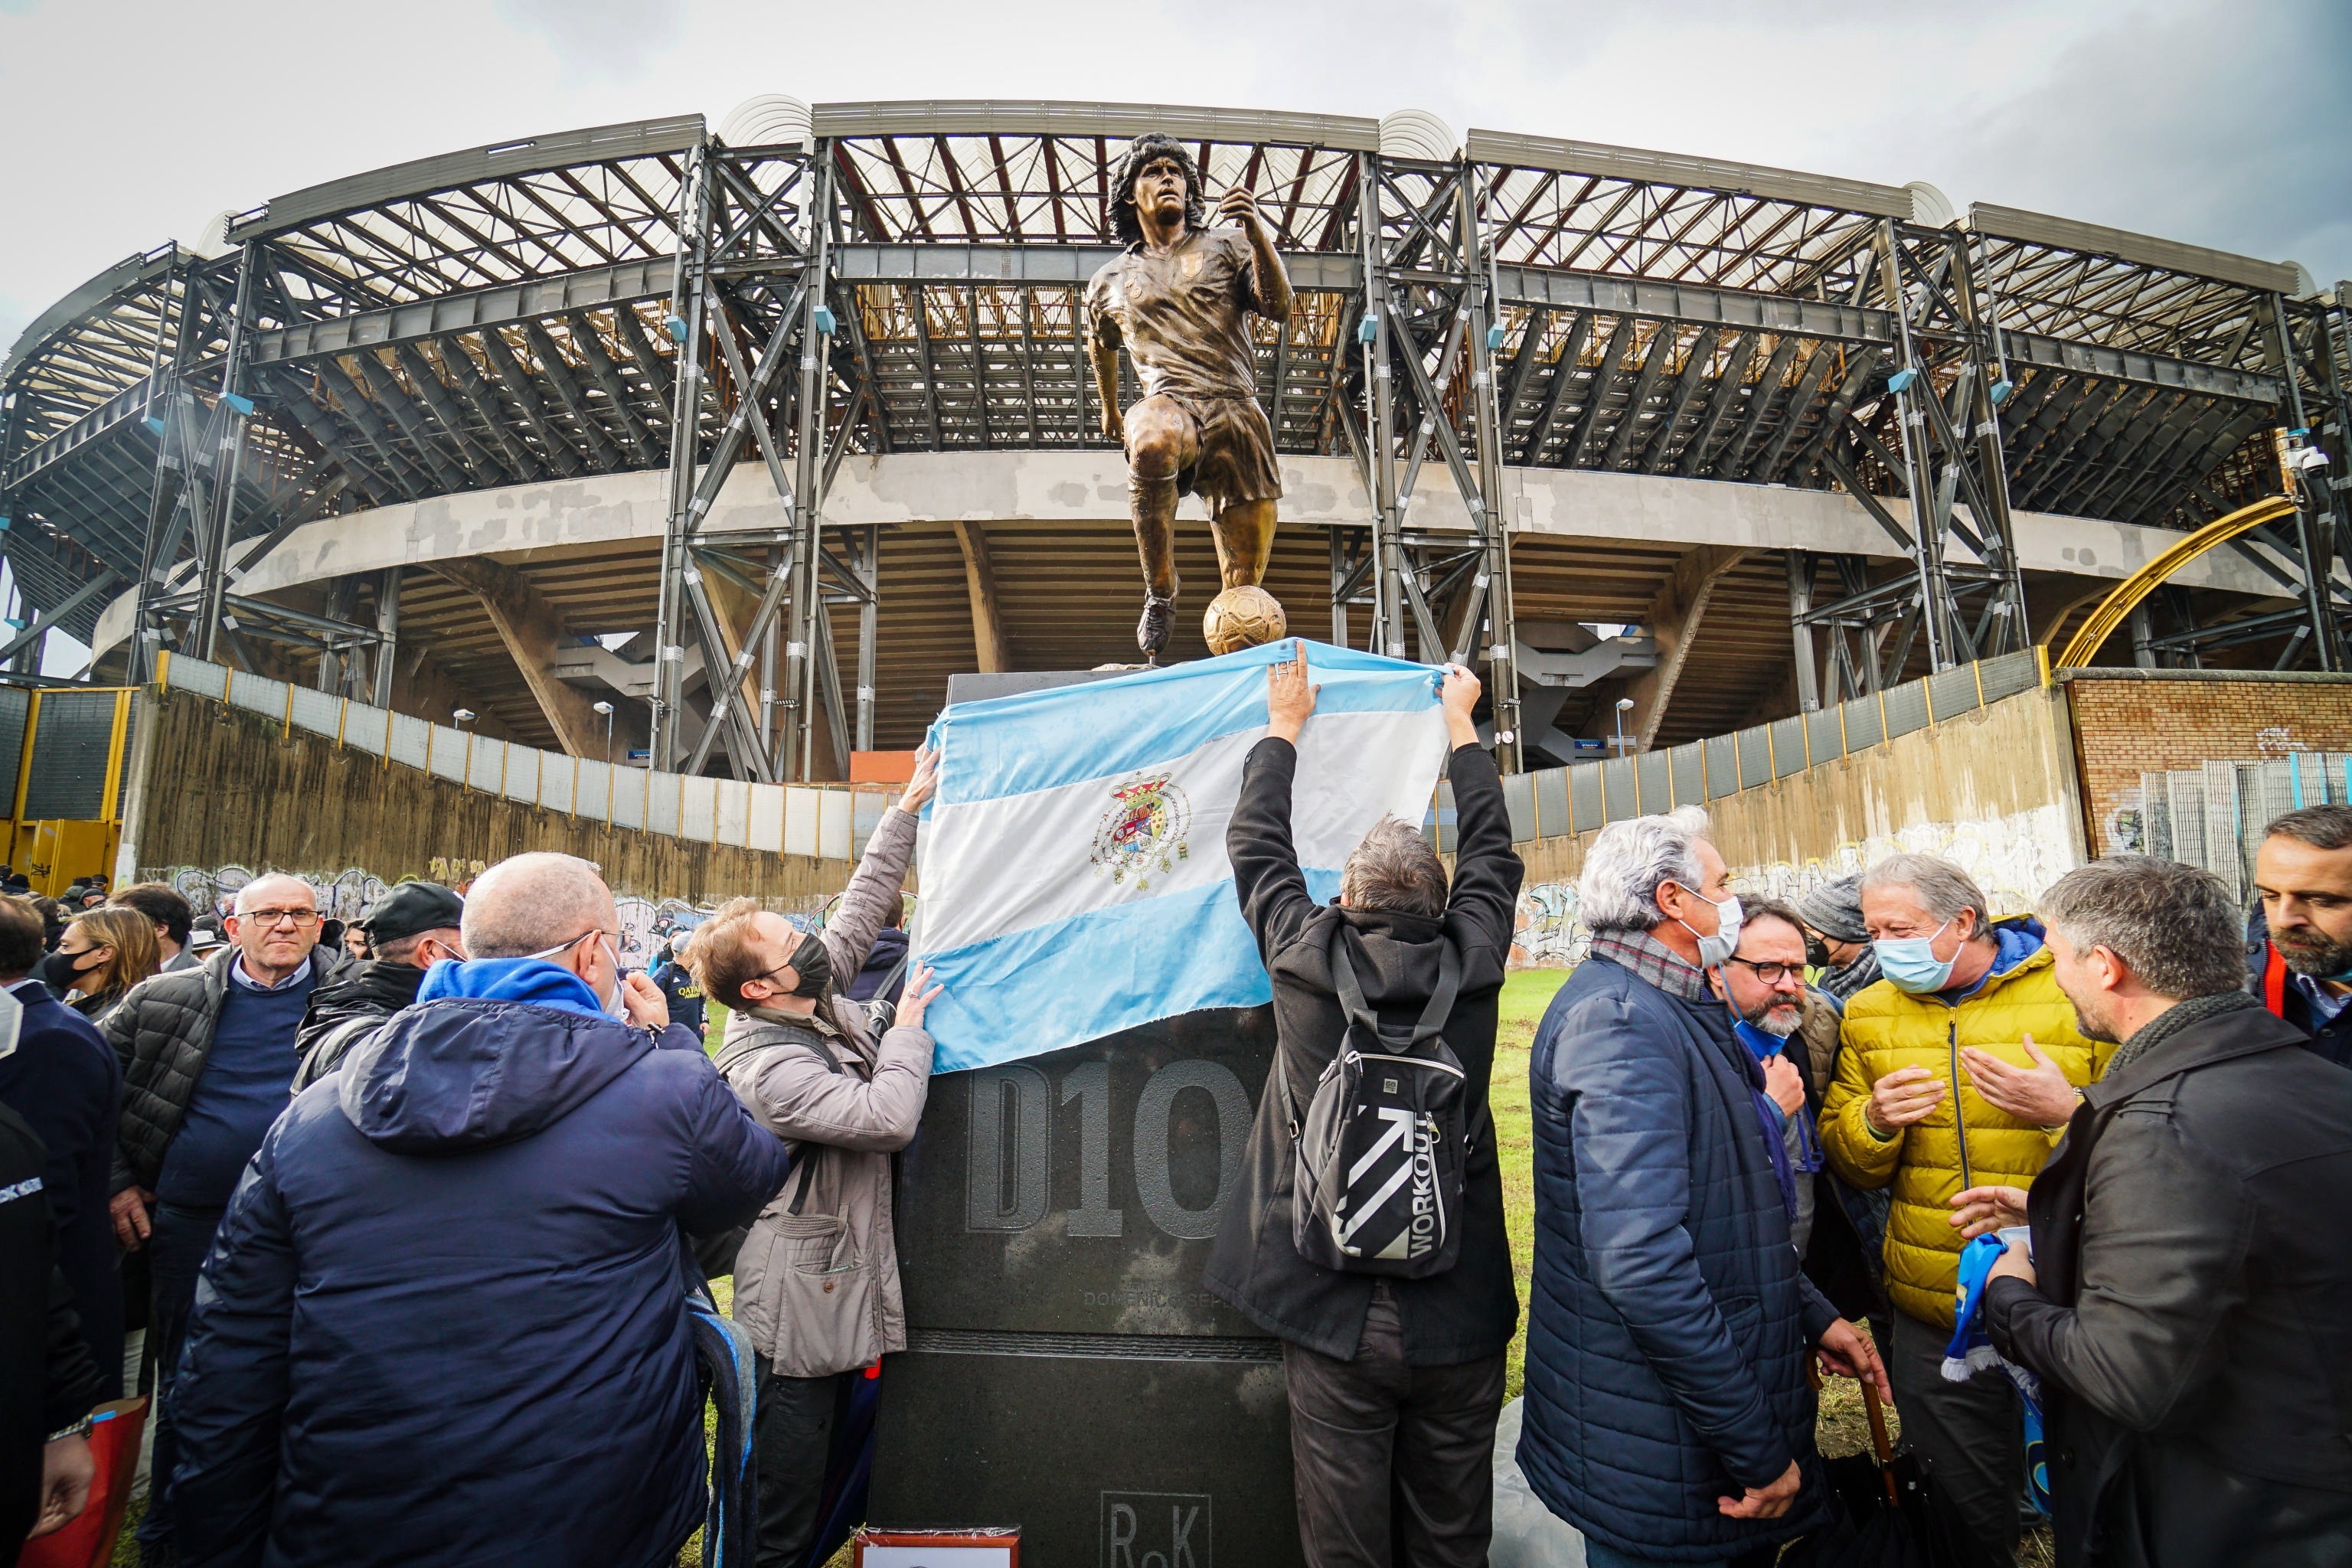 Homenaje a Maradona en Nápoles, lugar donde se lo sigue reverenciando como cuando jugaba allí